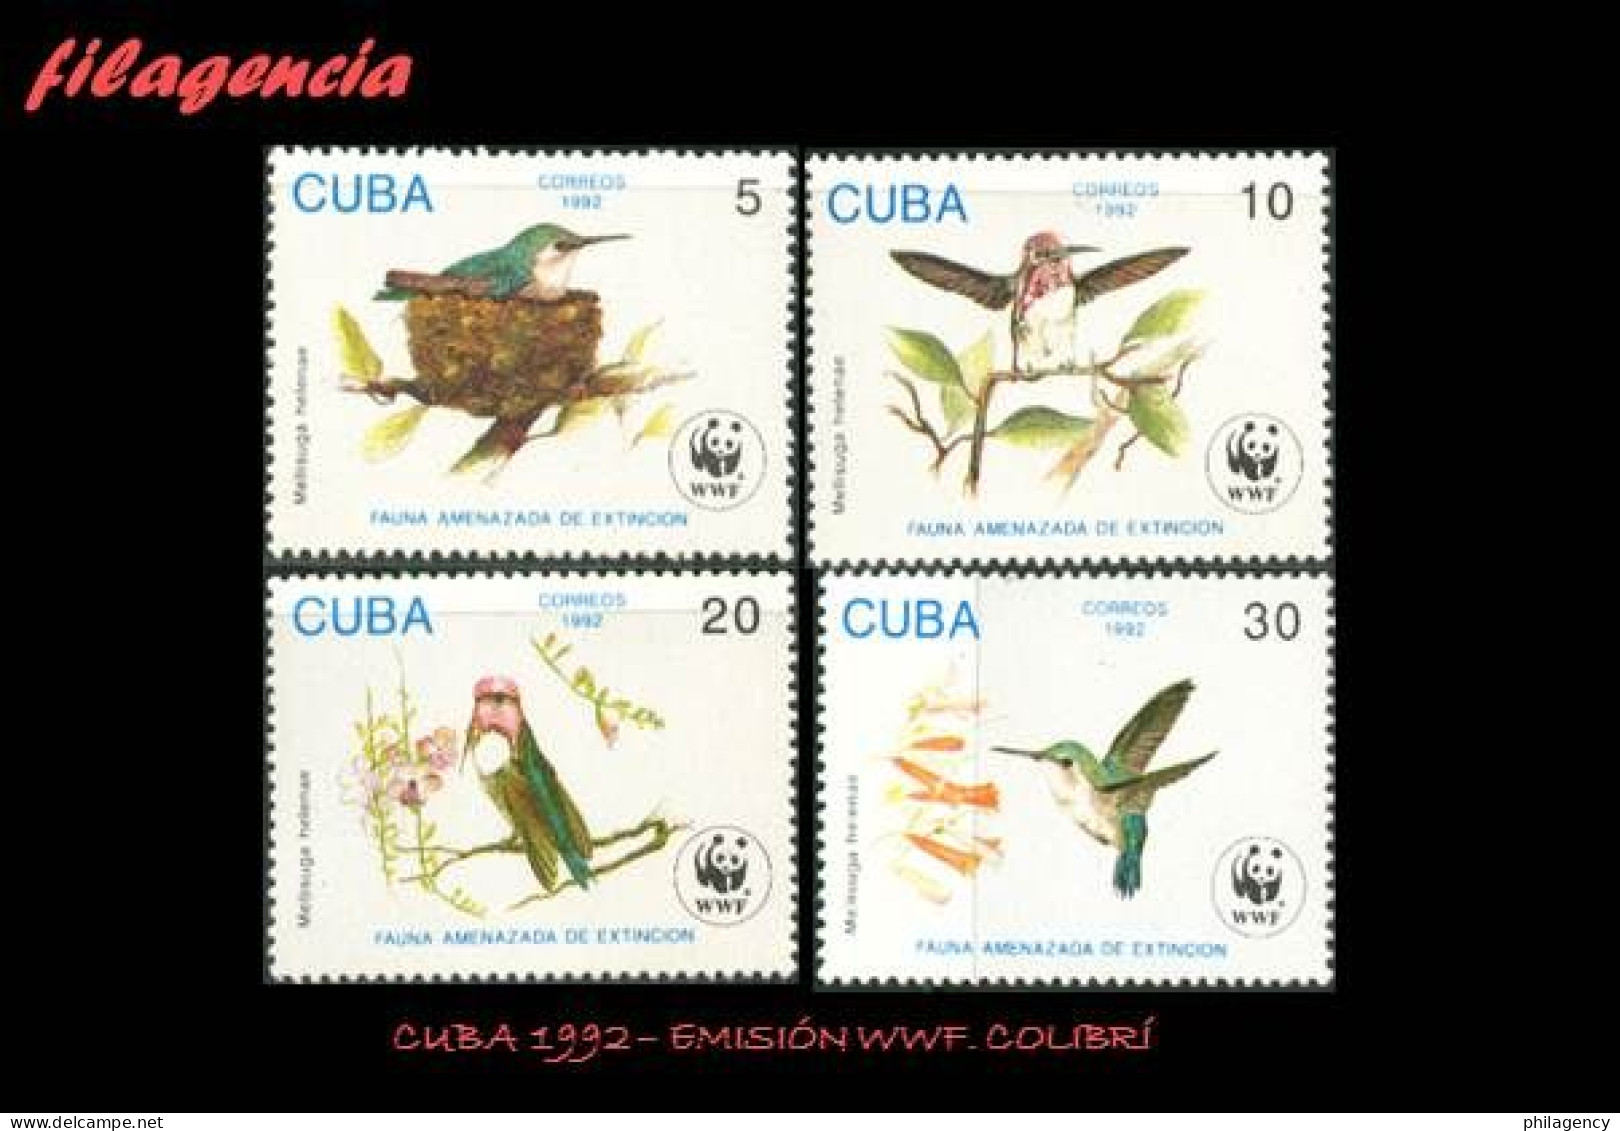 CUBA MINT. 1992-12 EMISIÓN WWF. FAUNA AMENAZADA DE EXTINCIÓN. COLIBRÍ. - Unused Stamps